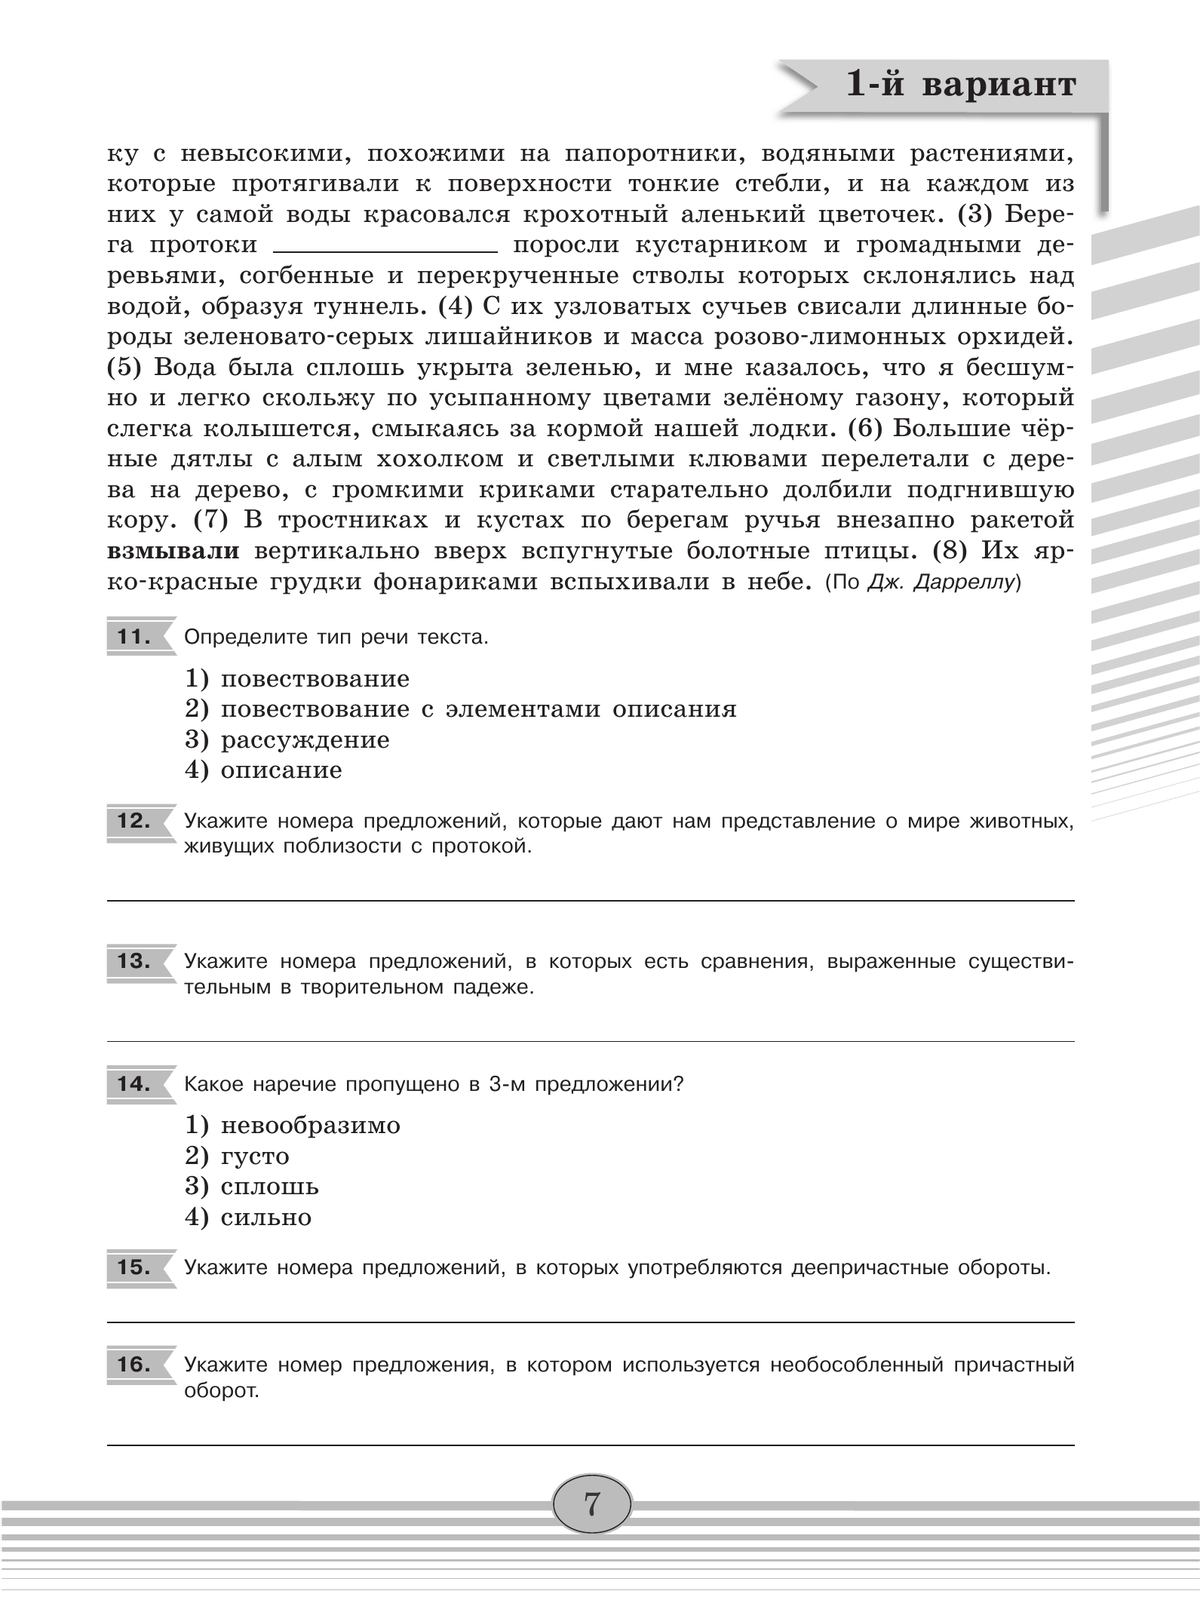 Русский язык. Диагностические работы. 8 класс 6